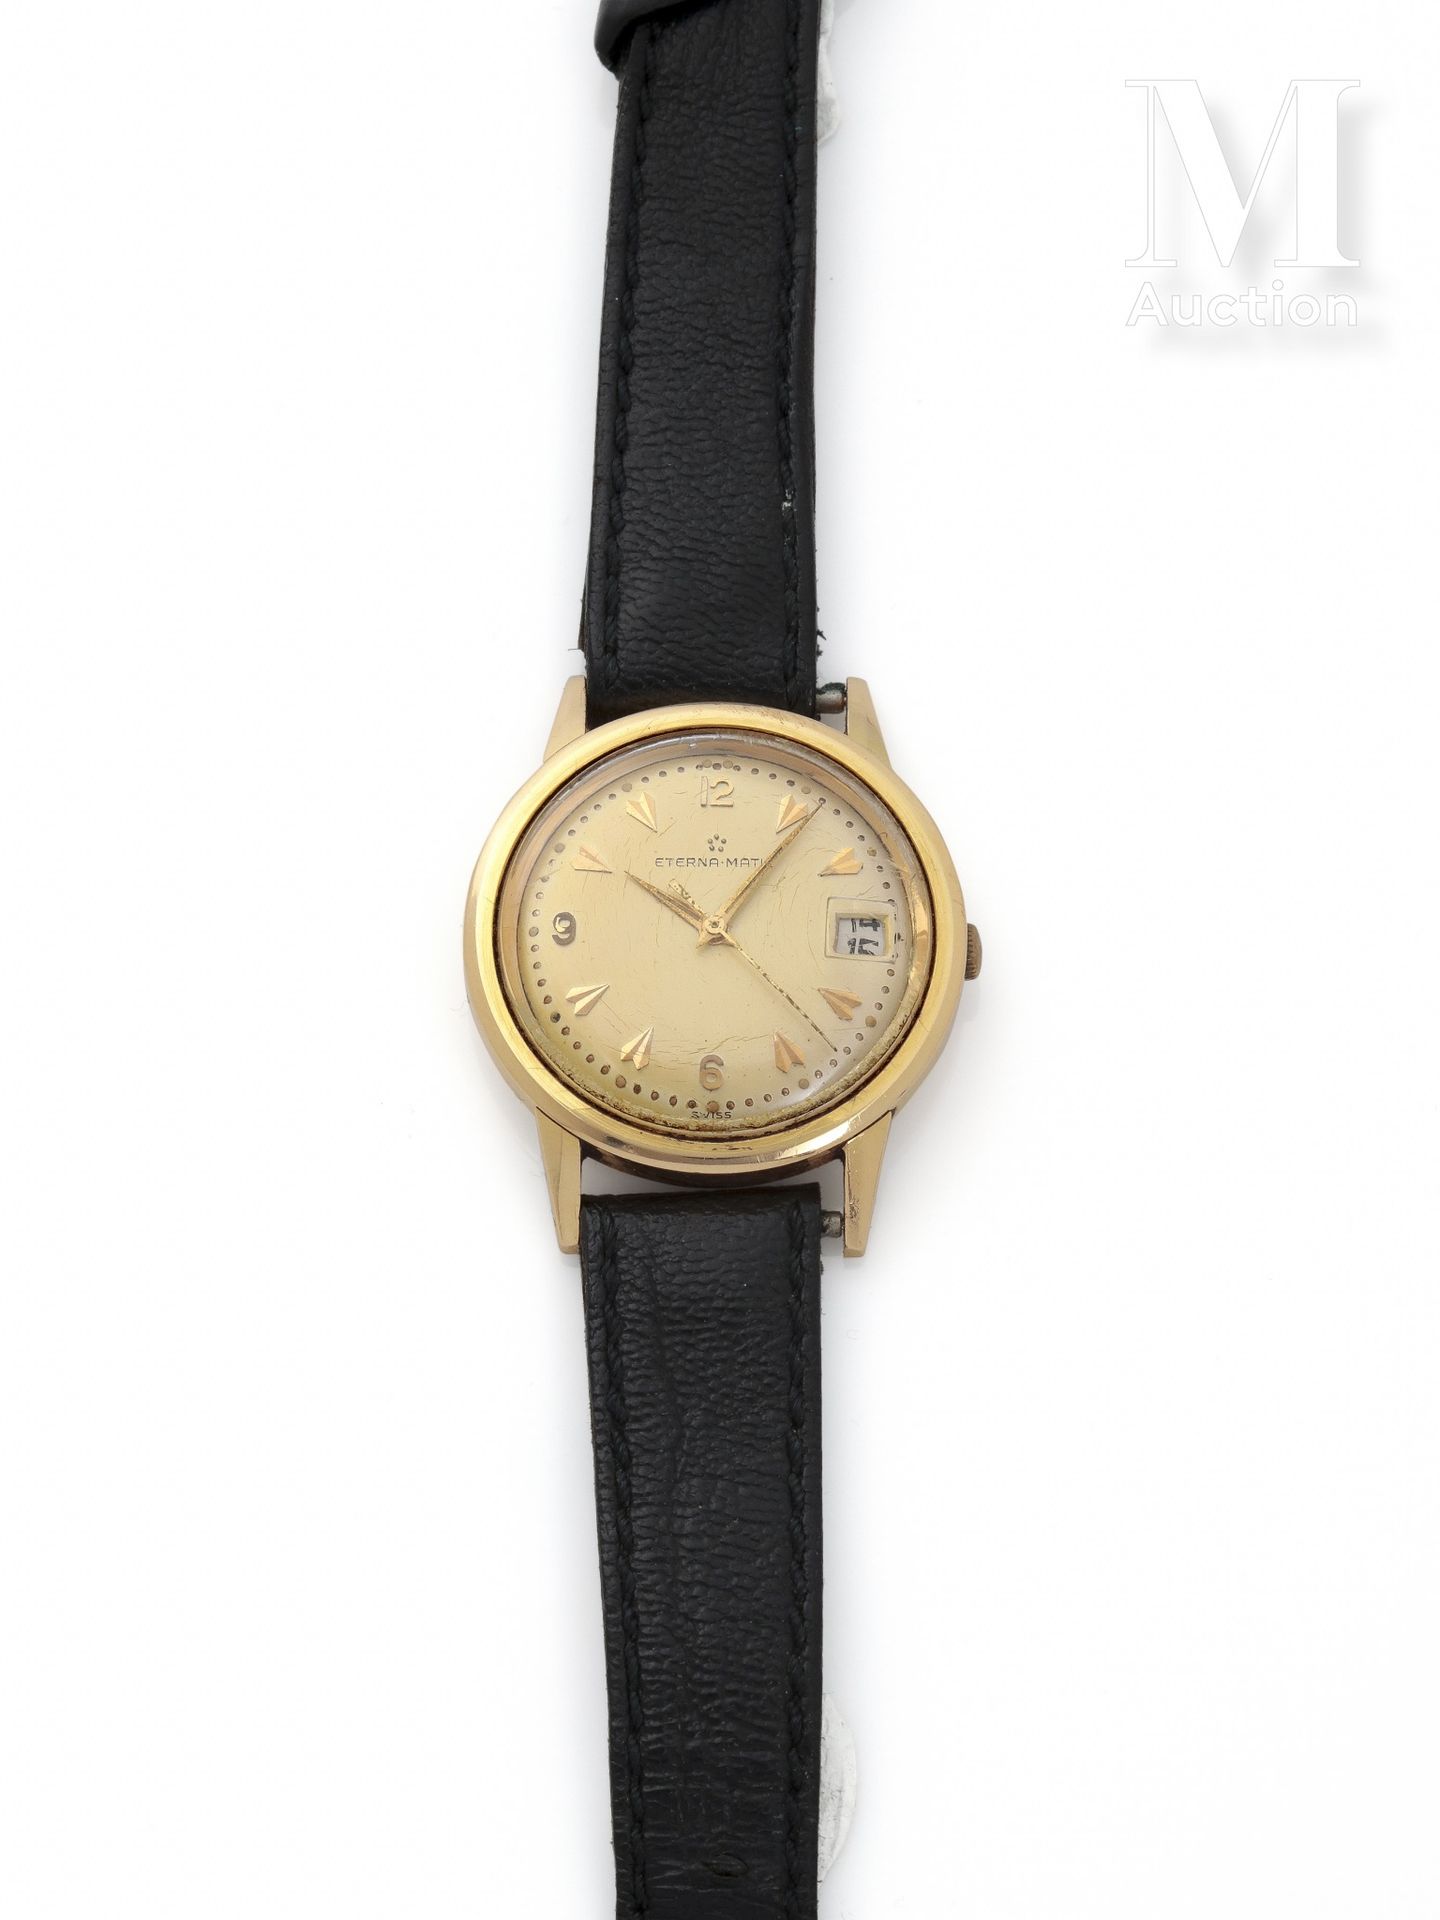 ETERNA-MATIC Herrenuhr

Um 1960

Gehäuse aus 18 Karat Gold 

Mechanisches Uhrwer&hellip;